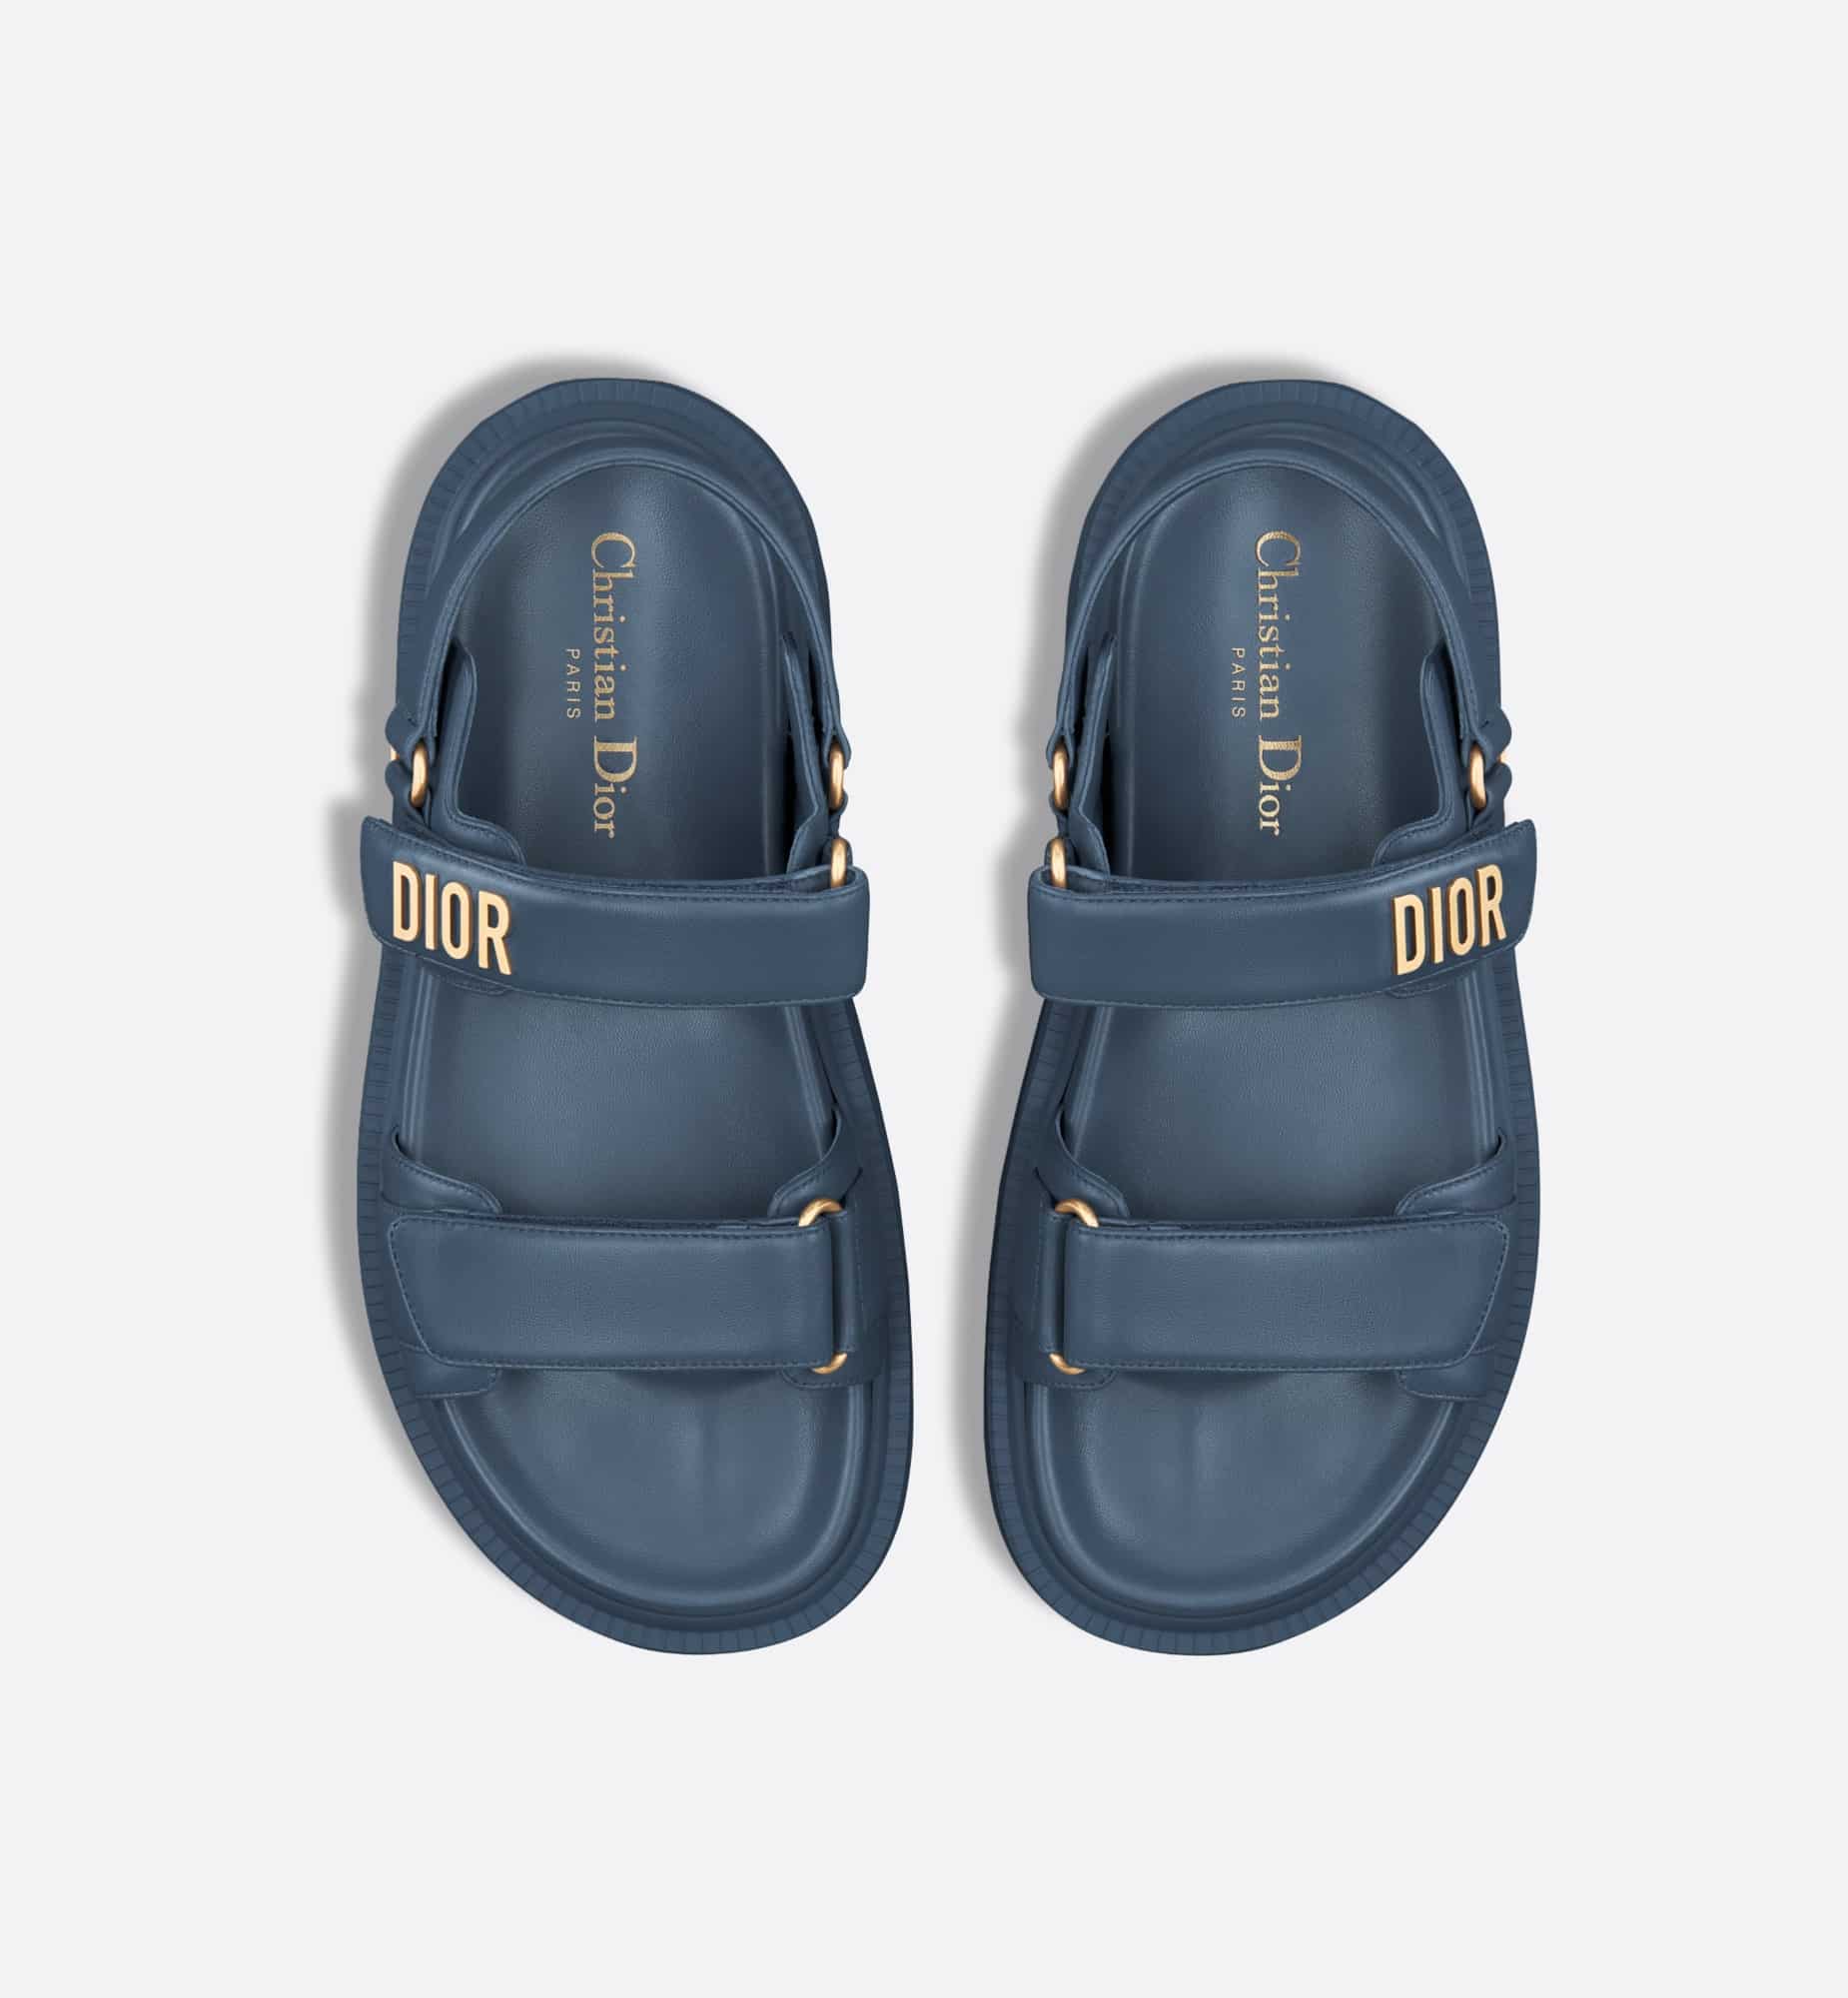 Dior Sandals Blue - Globalchic Styles